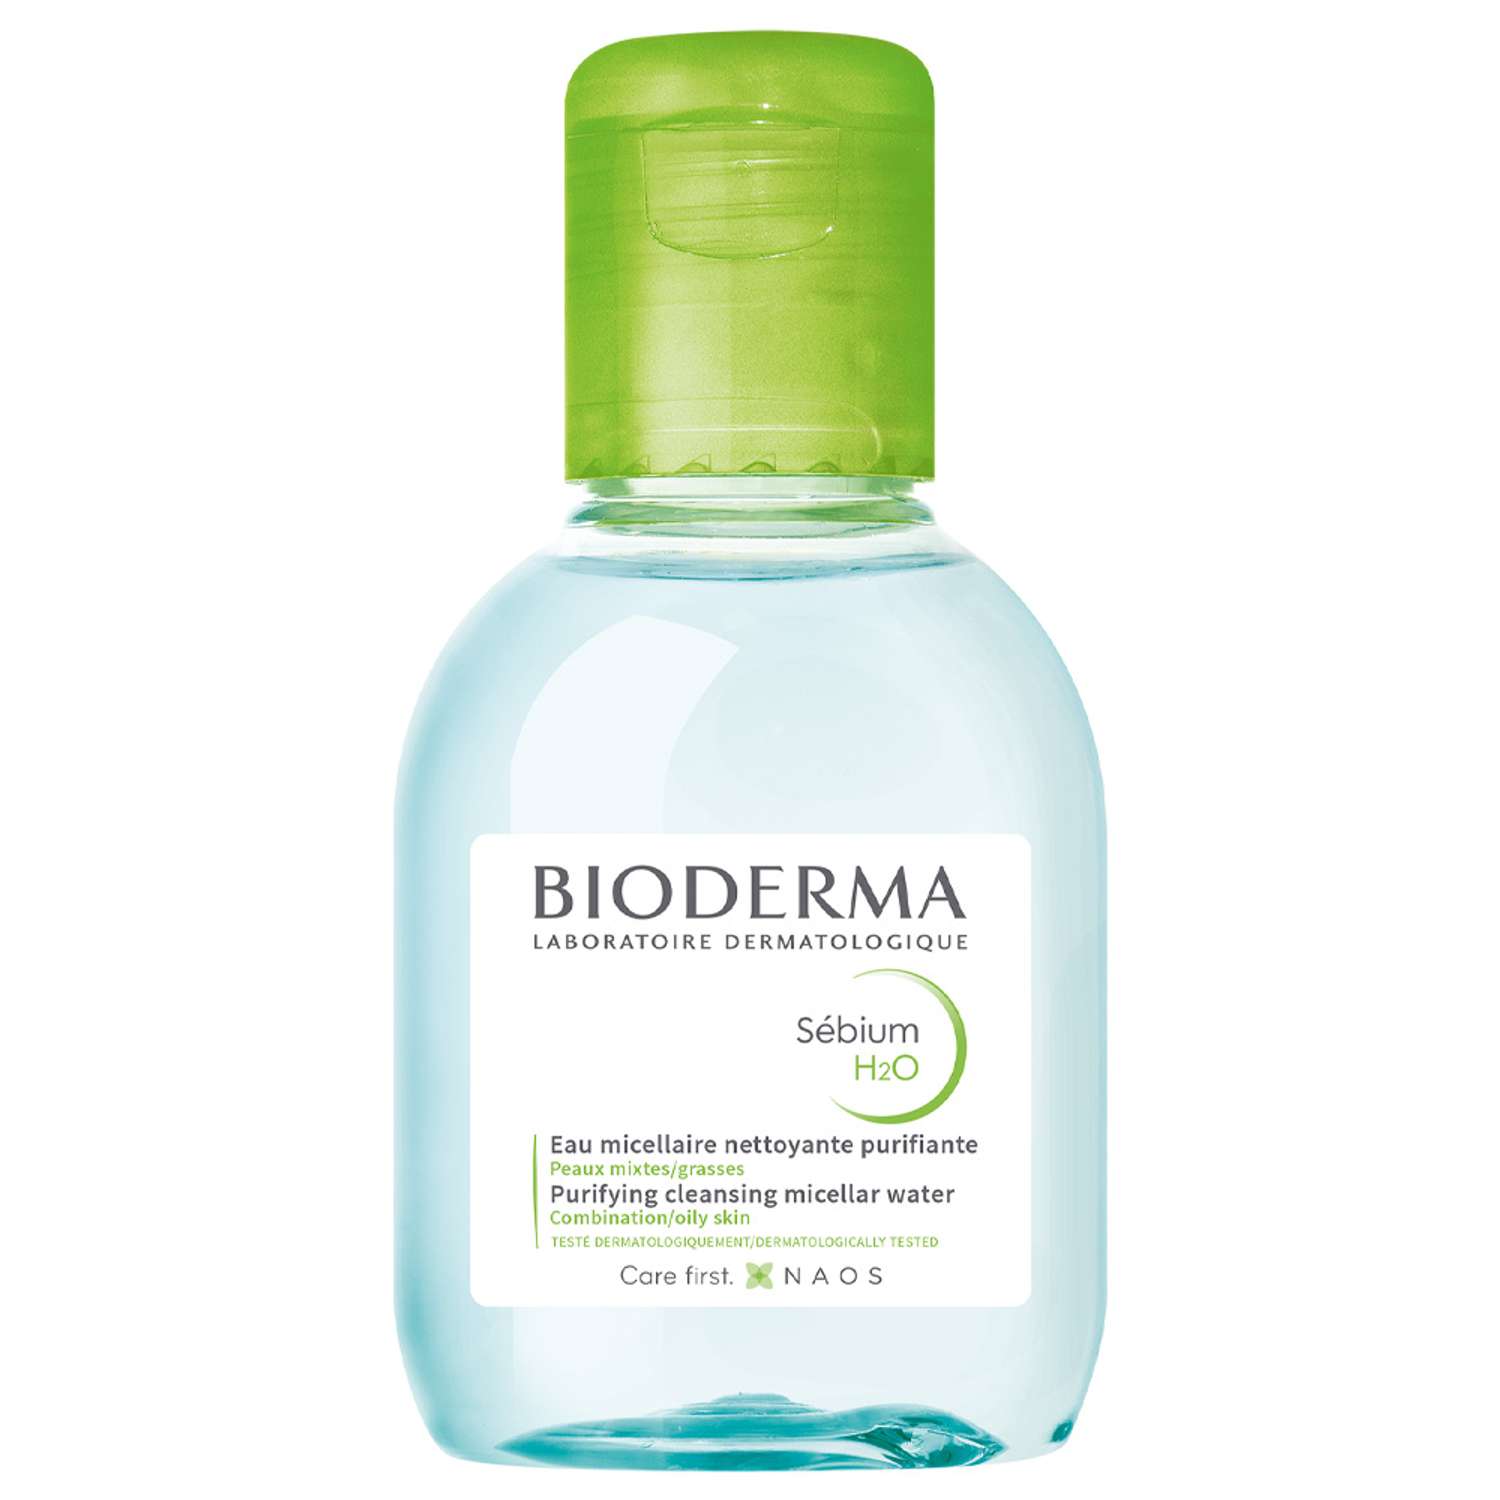 Мицеллярная вода H2O Bioderma Sebium очищающая для жирной и проблемной кожи лица 100 мл - фото 1